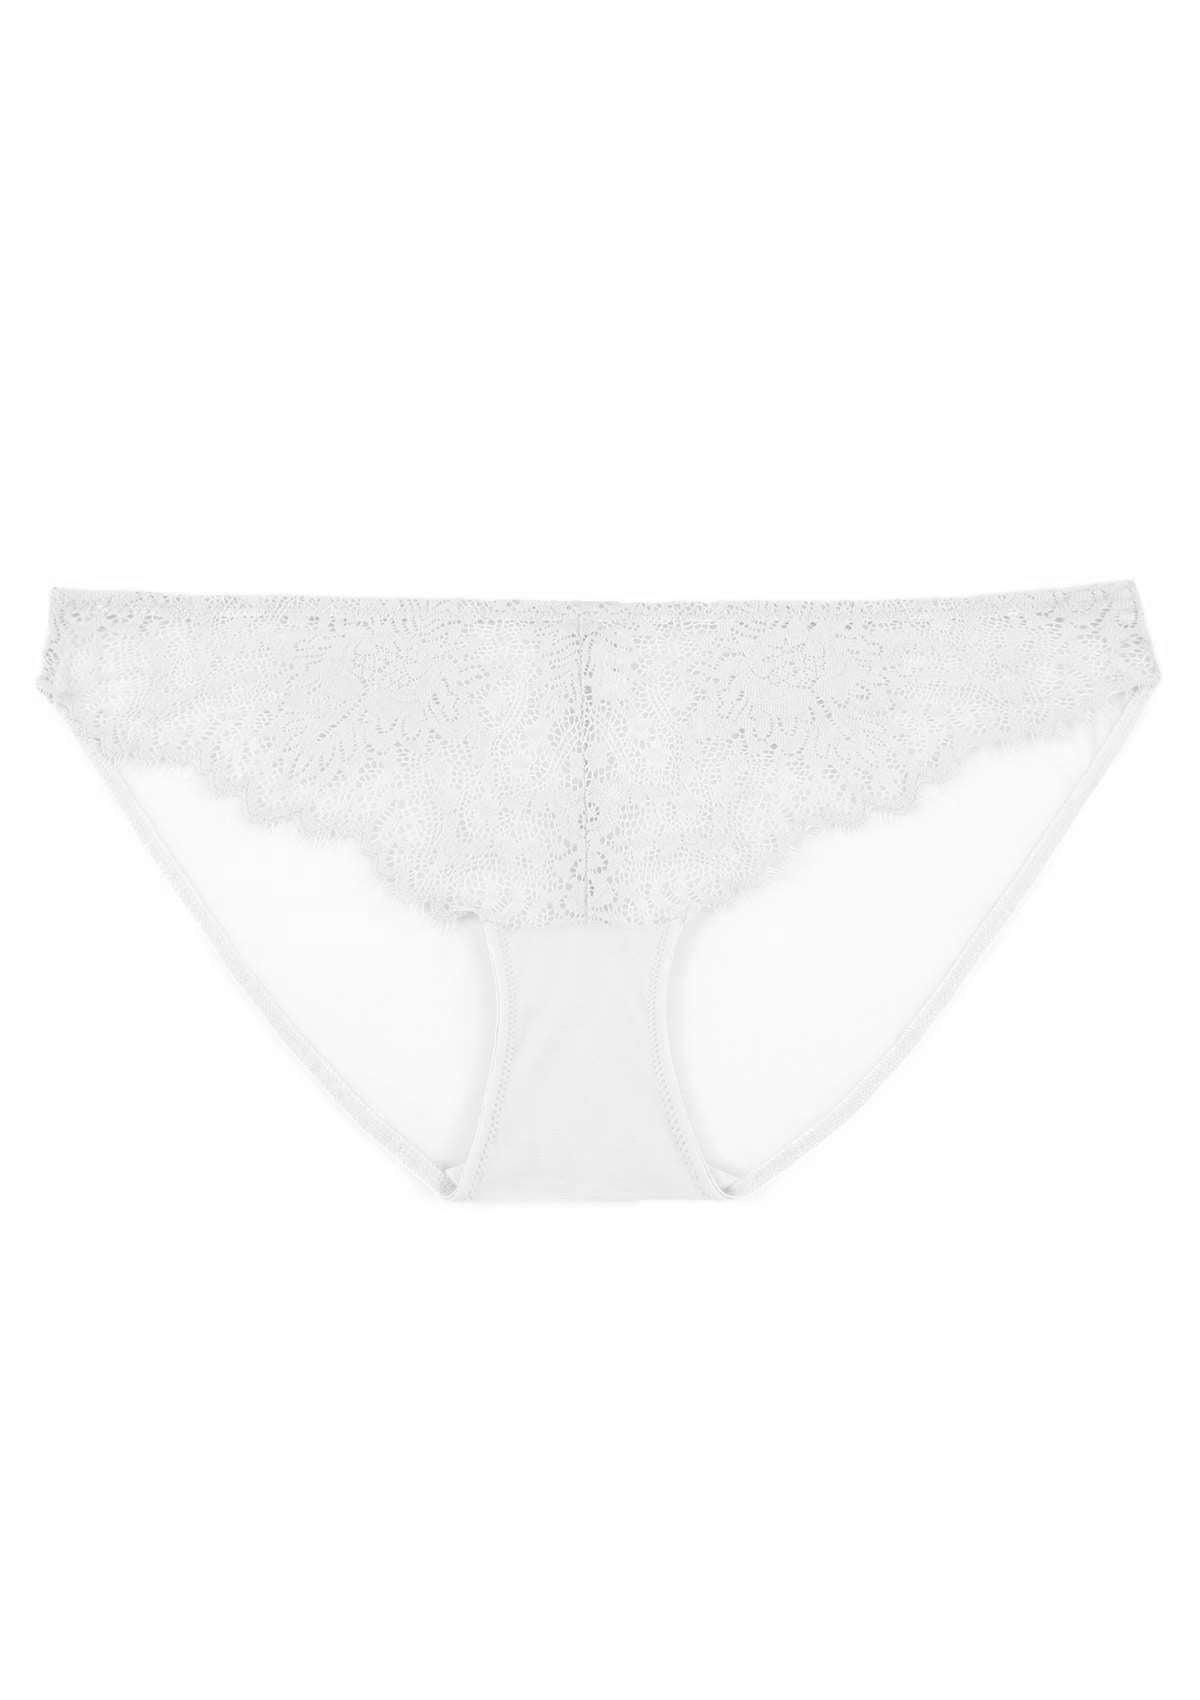 HSIA Sunflower Exquisite White Lace Bikini Underwear - M / Bikini / White